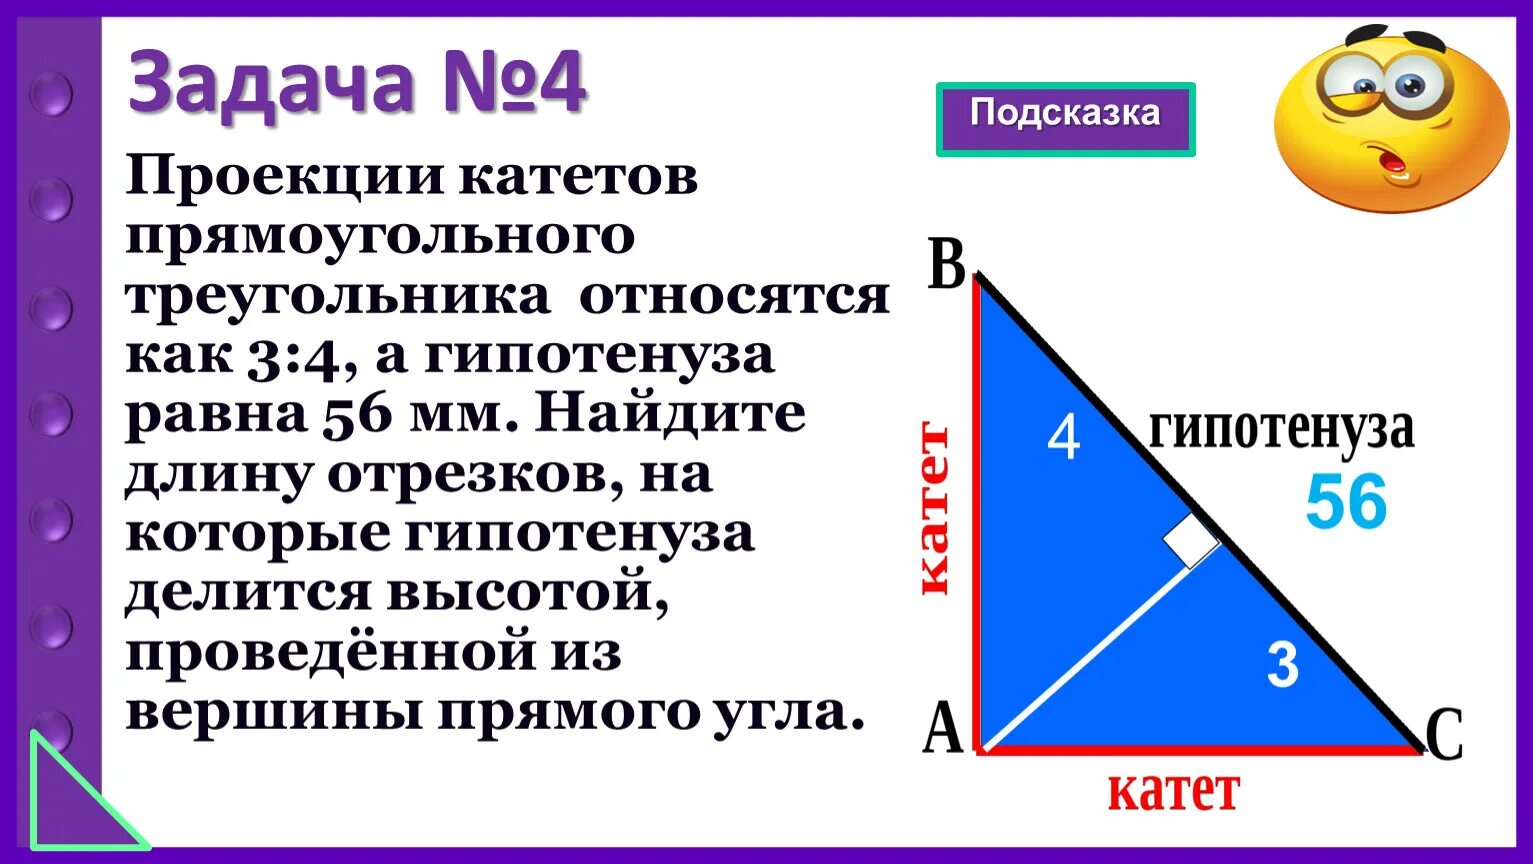 Гипотенуза треугольника 1 5 1 5. Гипотенуза прямоугольного треугольника. Катет равен гипотенузе. Катеты прямоугольного треугольника. Катет прямоугольного треугольника равен.